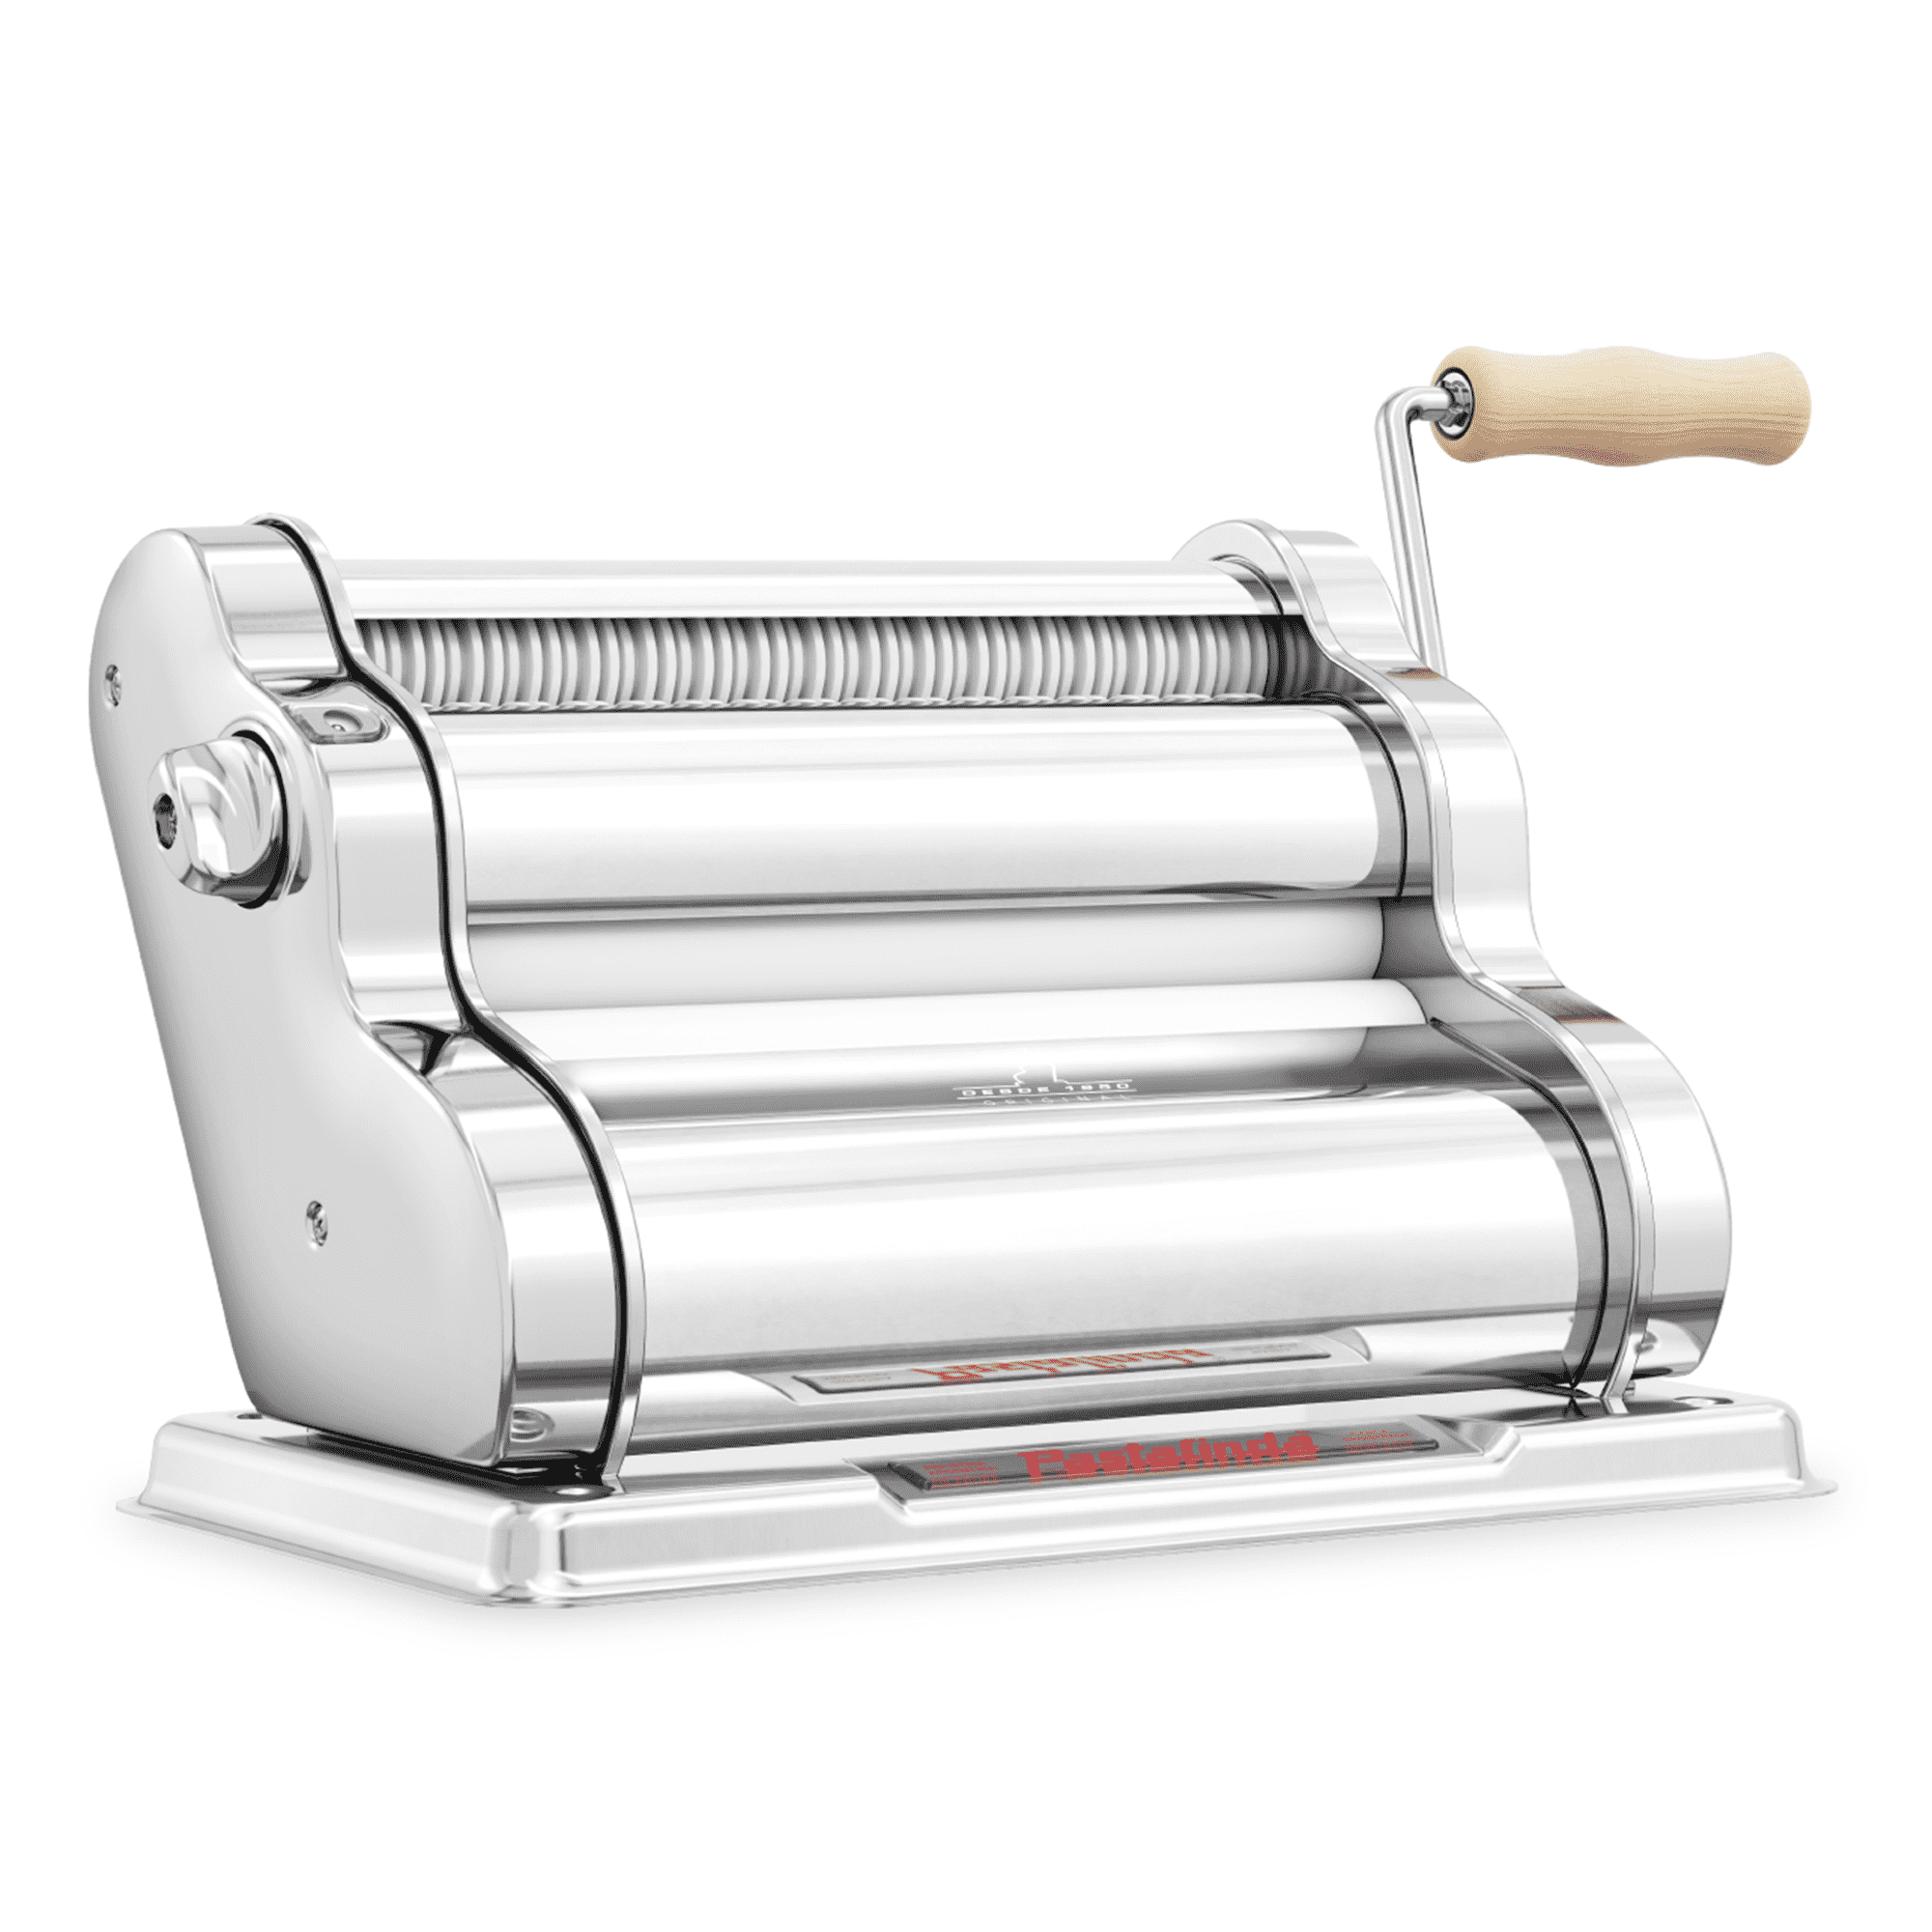 Hand Crank Chrome-Plated Pasta Machine